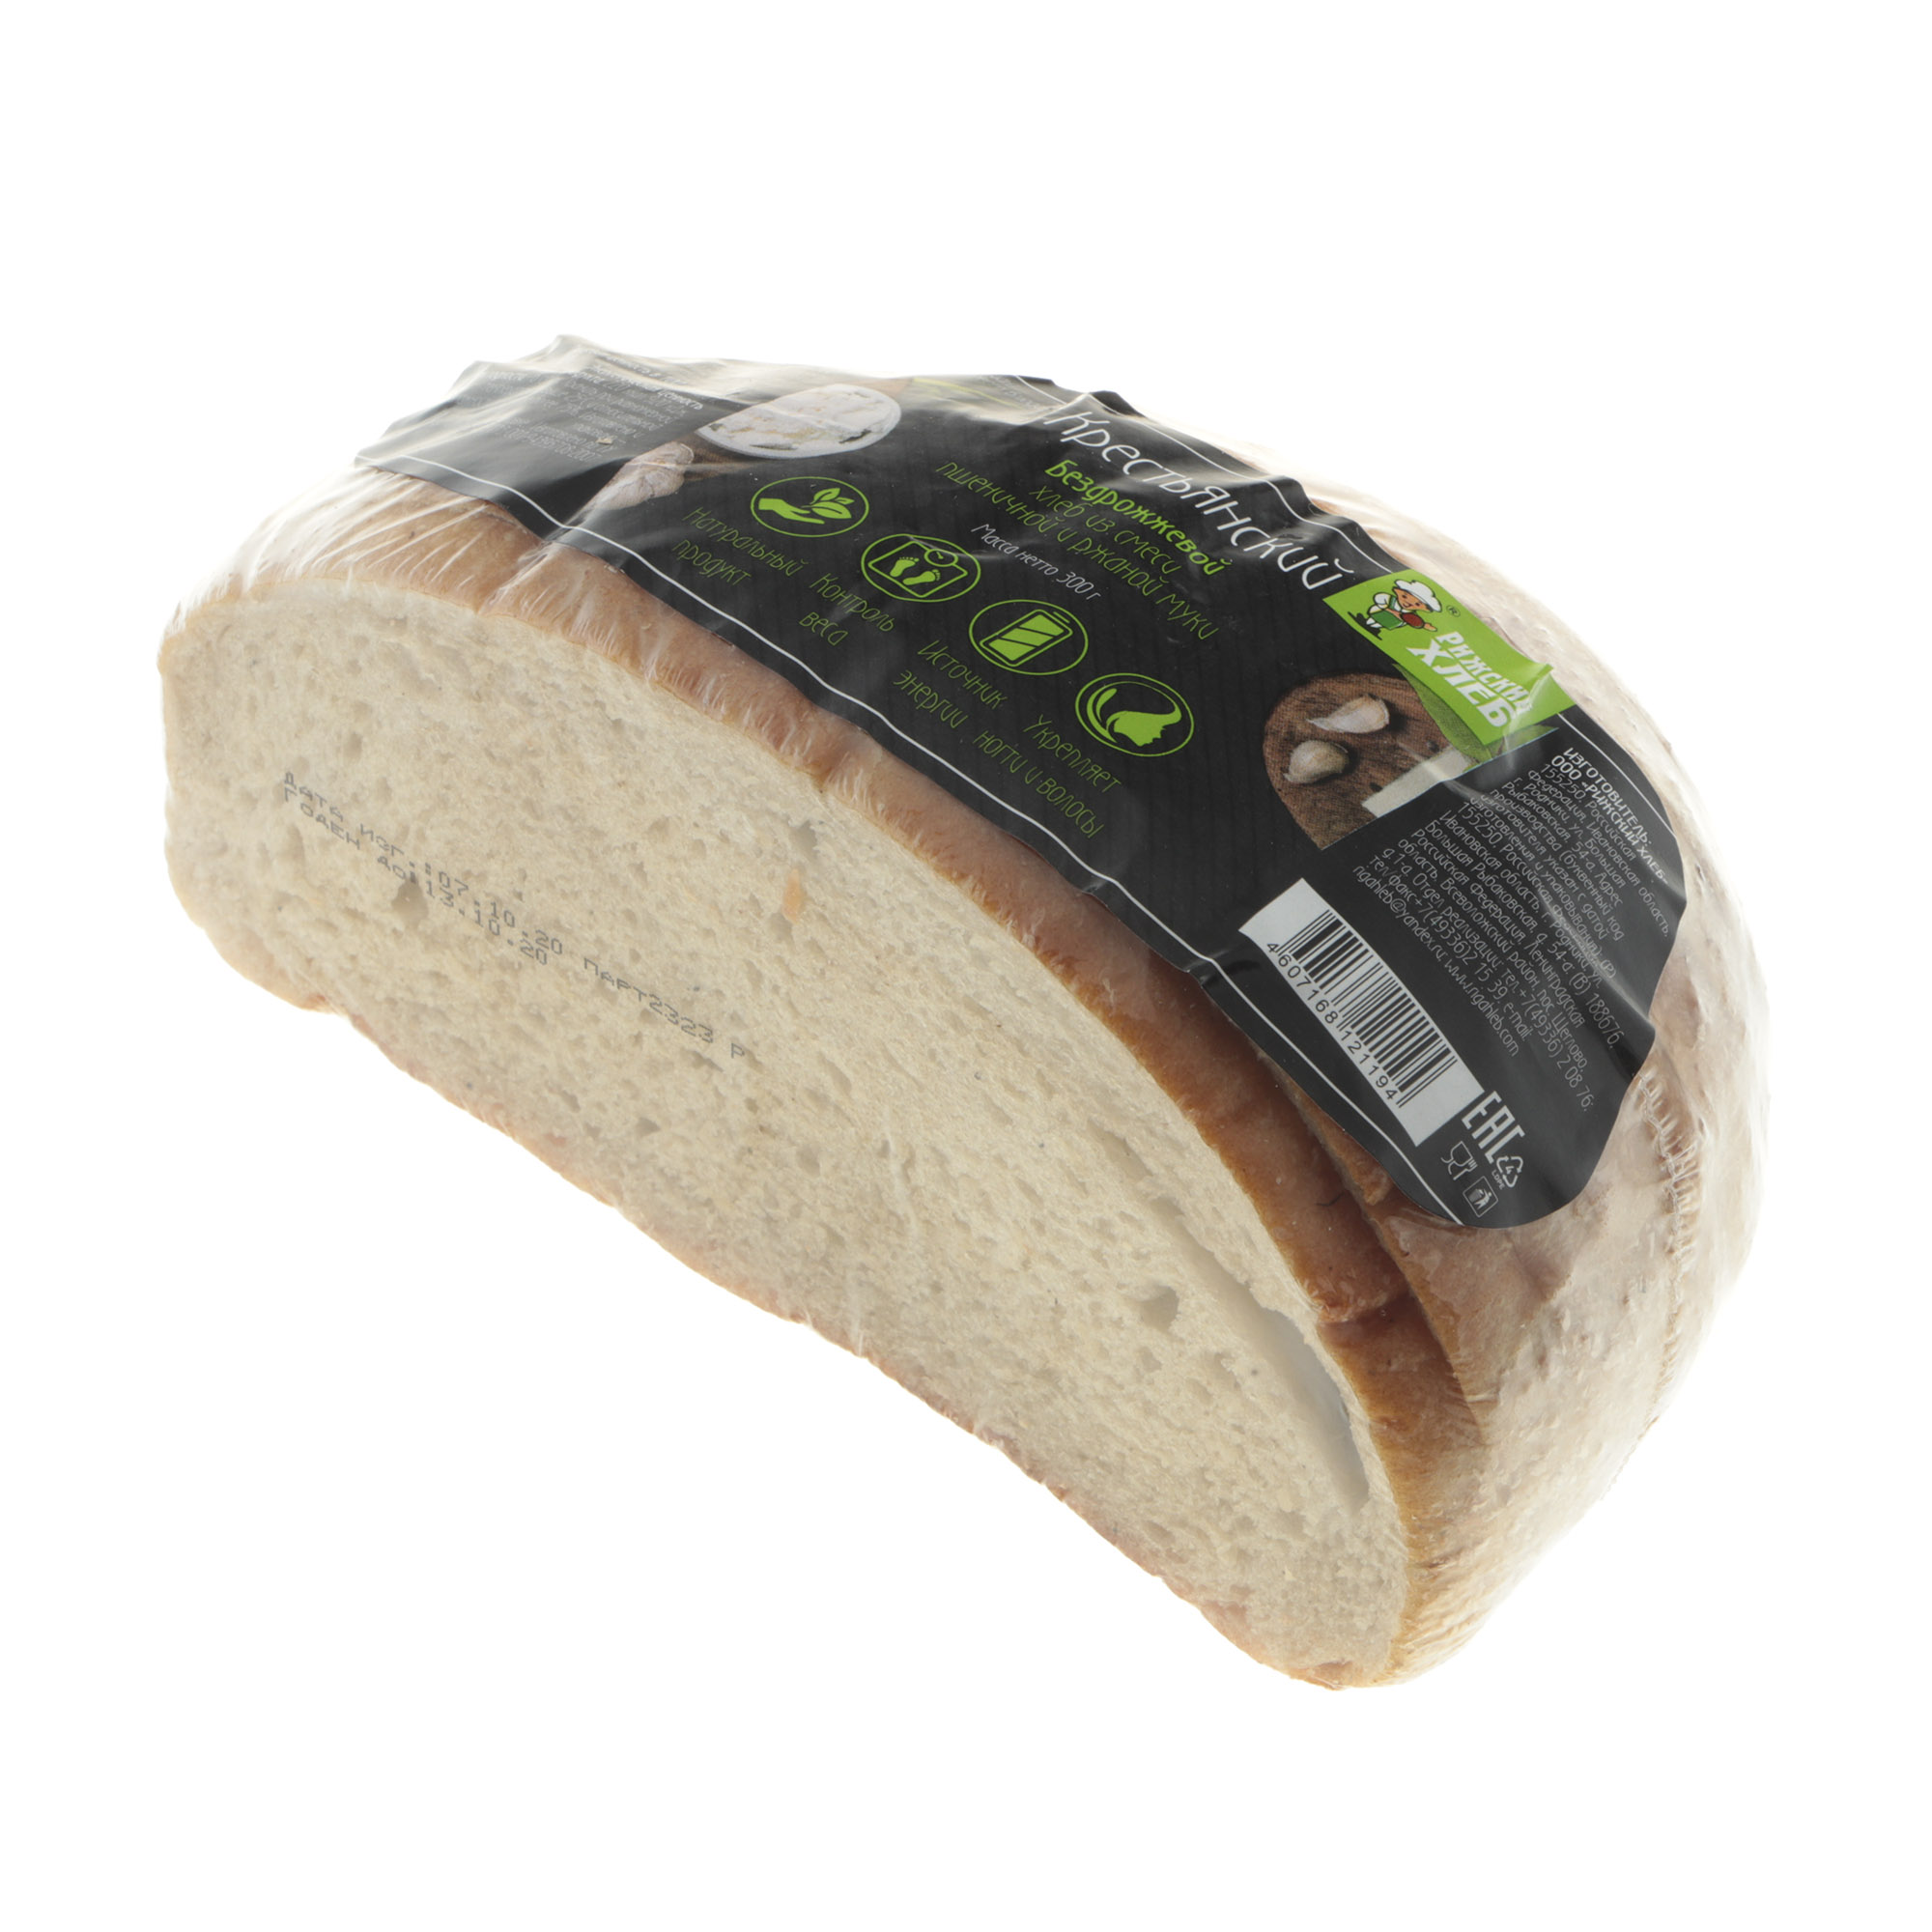 Хлеб Рижский хлеб крестьянский 300 г хлеб рижский хлеб крестьянский 300 г